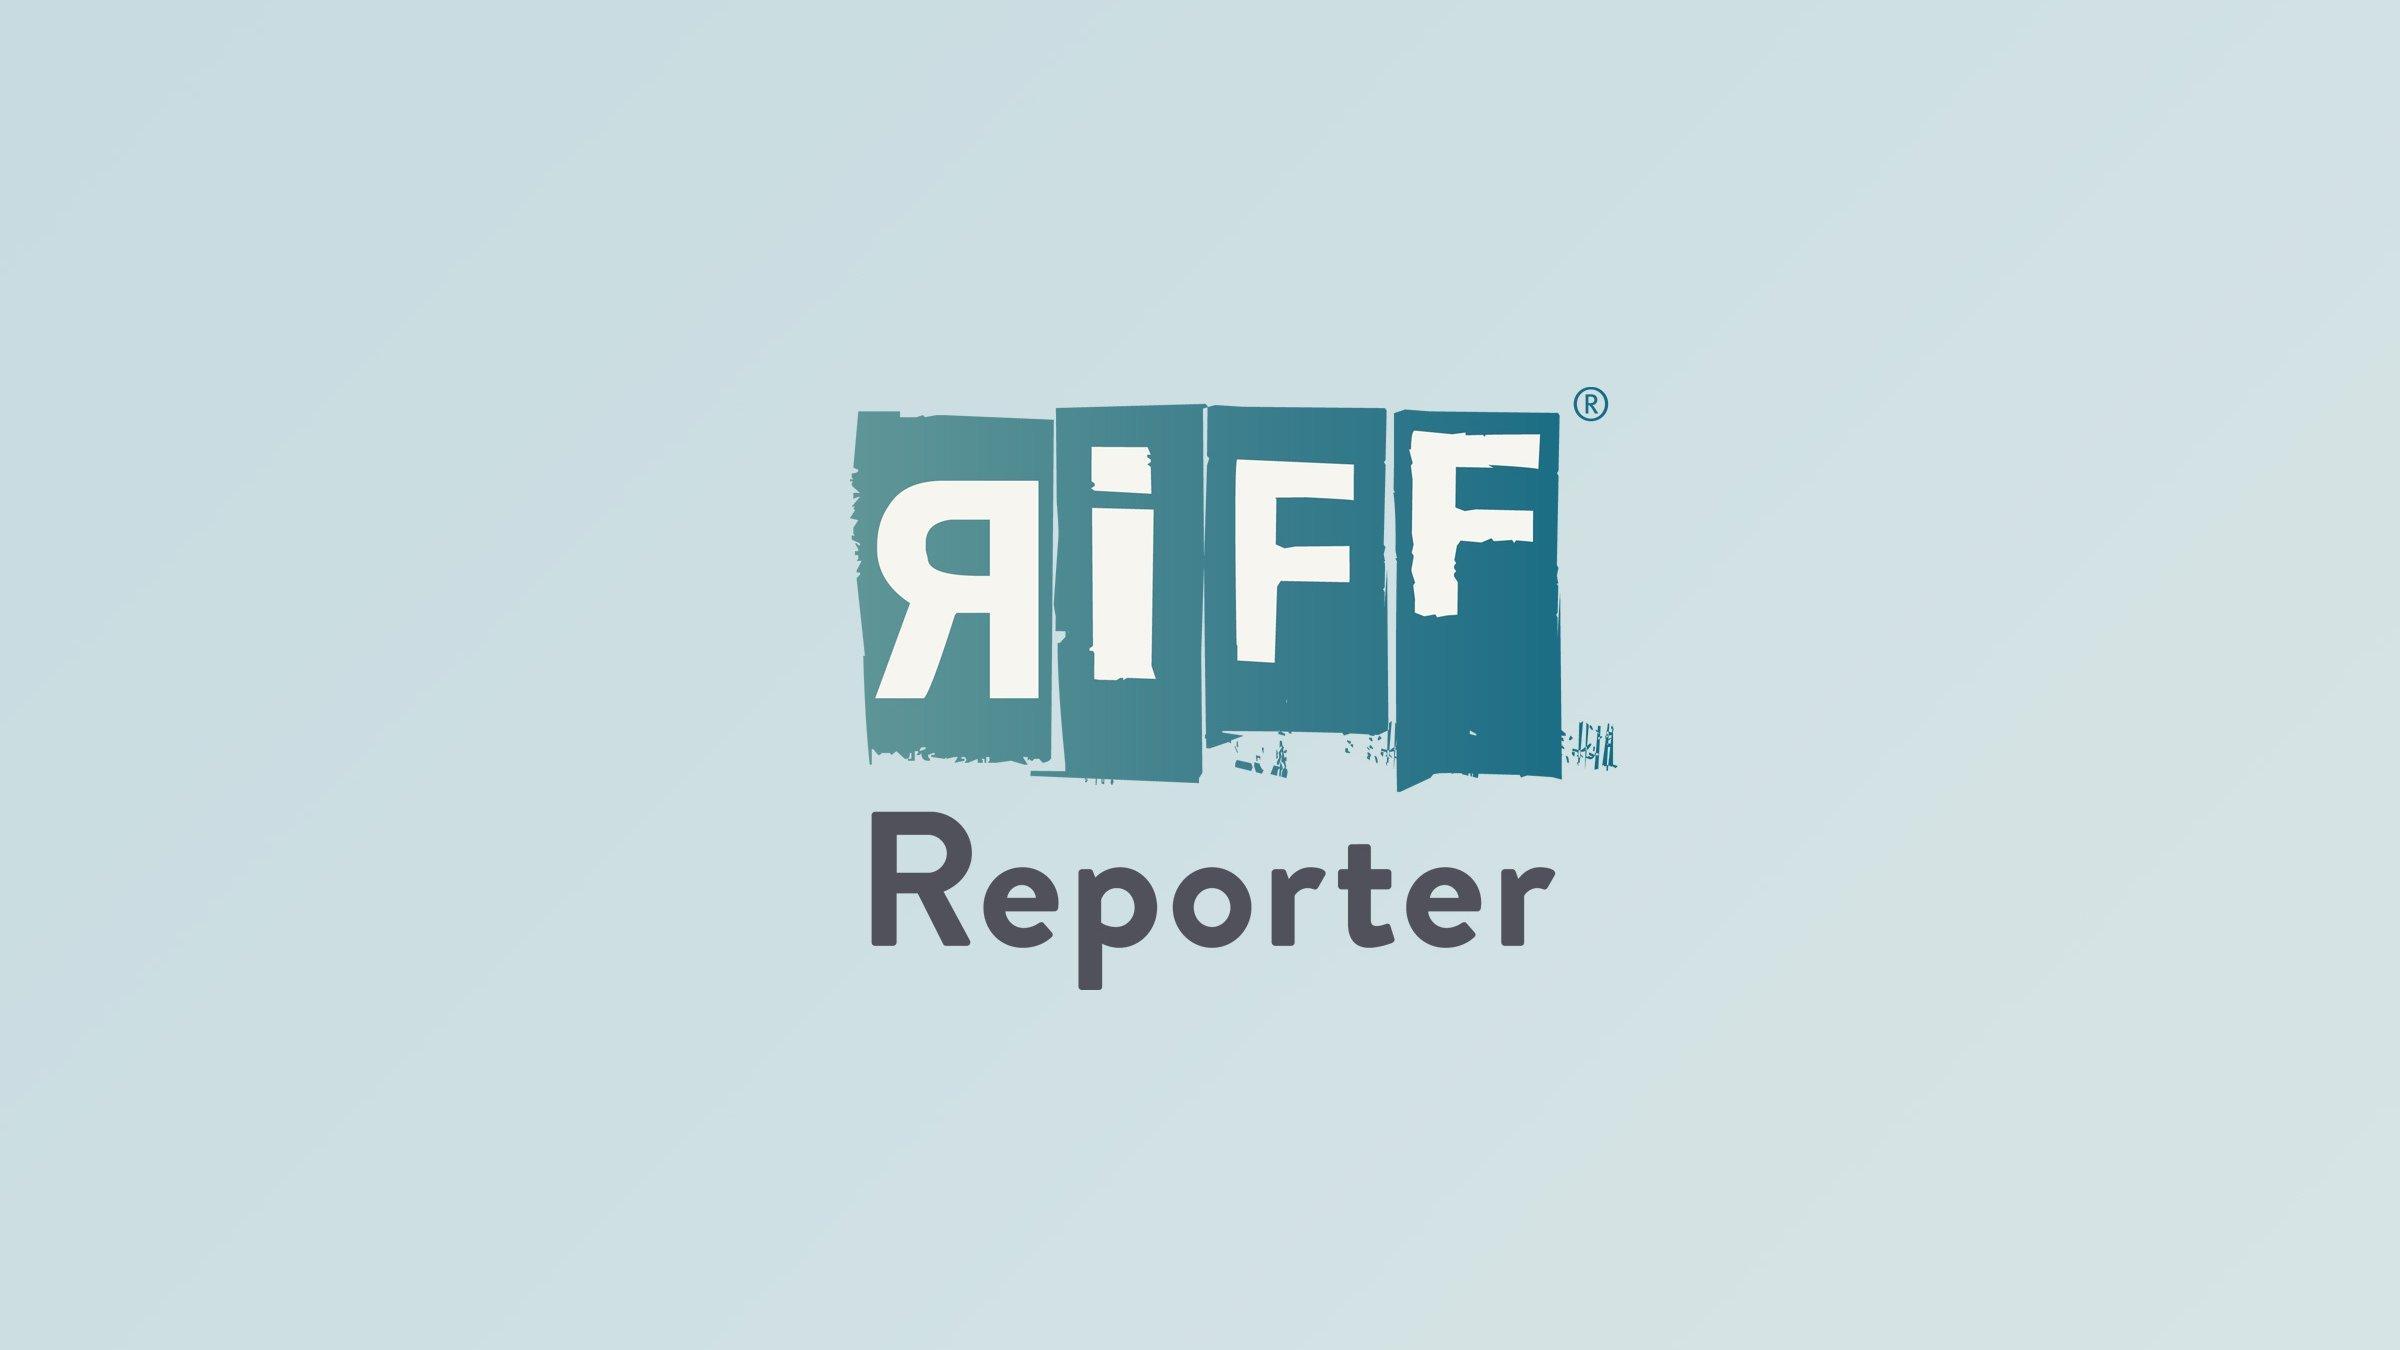 RiffReporter Logo